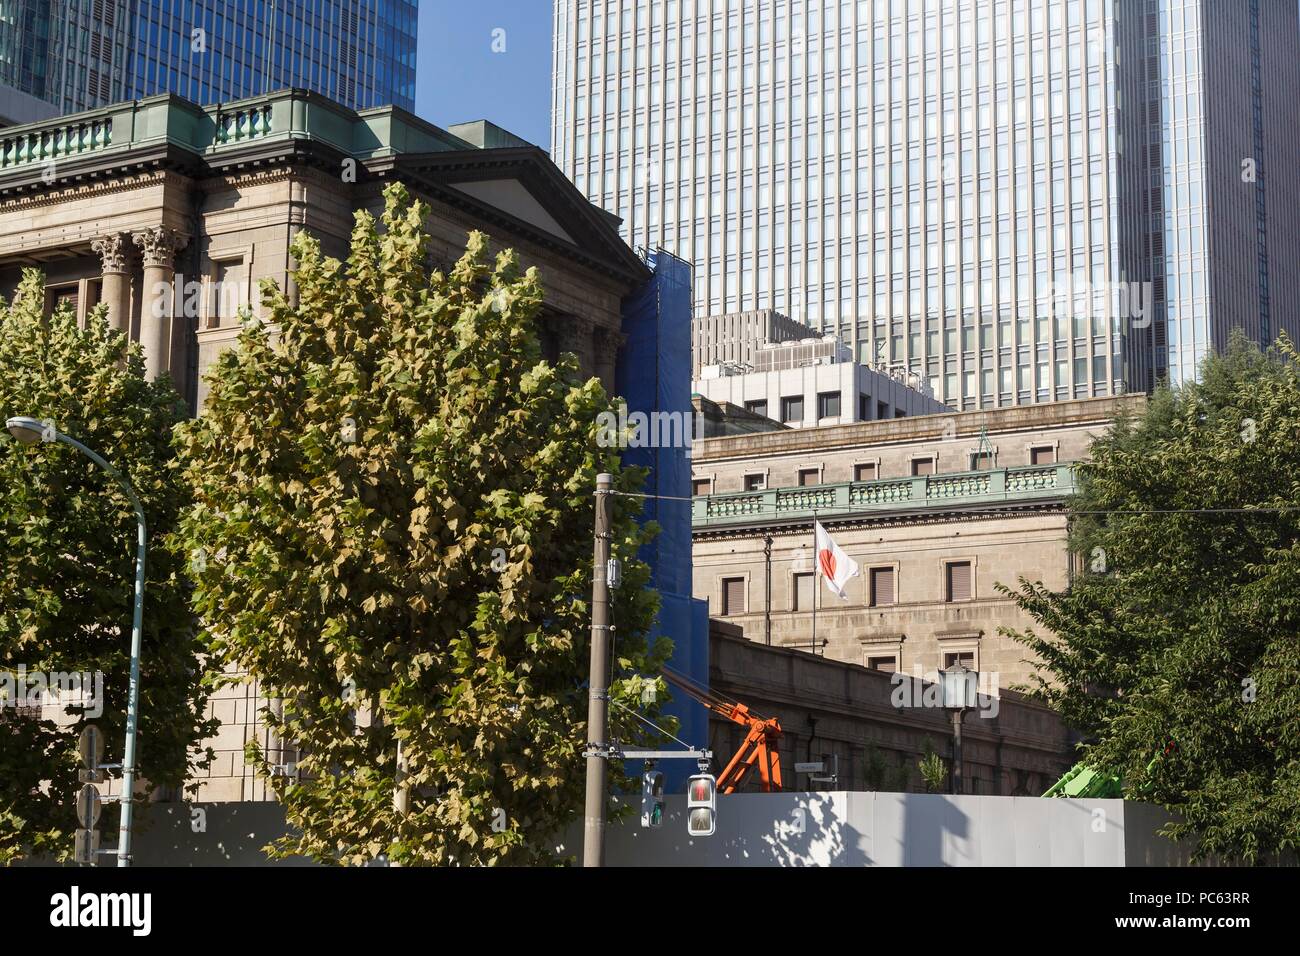 Una vista del Banco de Japón en construcción el 31 de julio de 2018, Tokio, Japón. El promedio Nikkei Stock terminado hasta 0.04% en 22,553.72, mientras que el más amplio índice TOPIX cayó un 0,84% a 1,753.29 después de que el Banco de Japón (BOJ) anunció que mantendría el ''muy baja'' de las tasas de interés. Crédito: Rodrigo Reyes Marin/AFLO/Alamy Live News Foto de stock